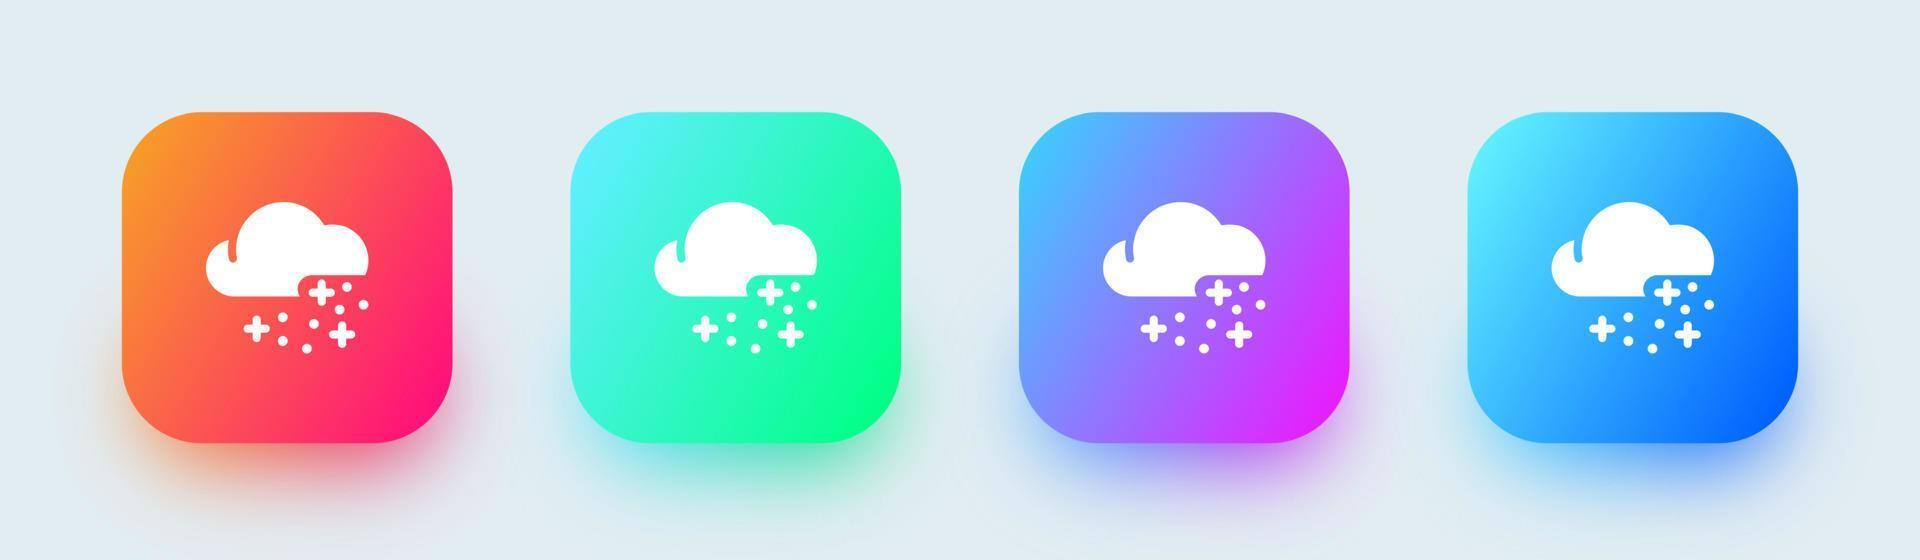 snöig fast ikon i fyrkant lutning färger. väder tecken vektor illustration.